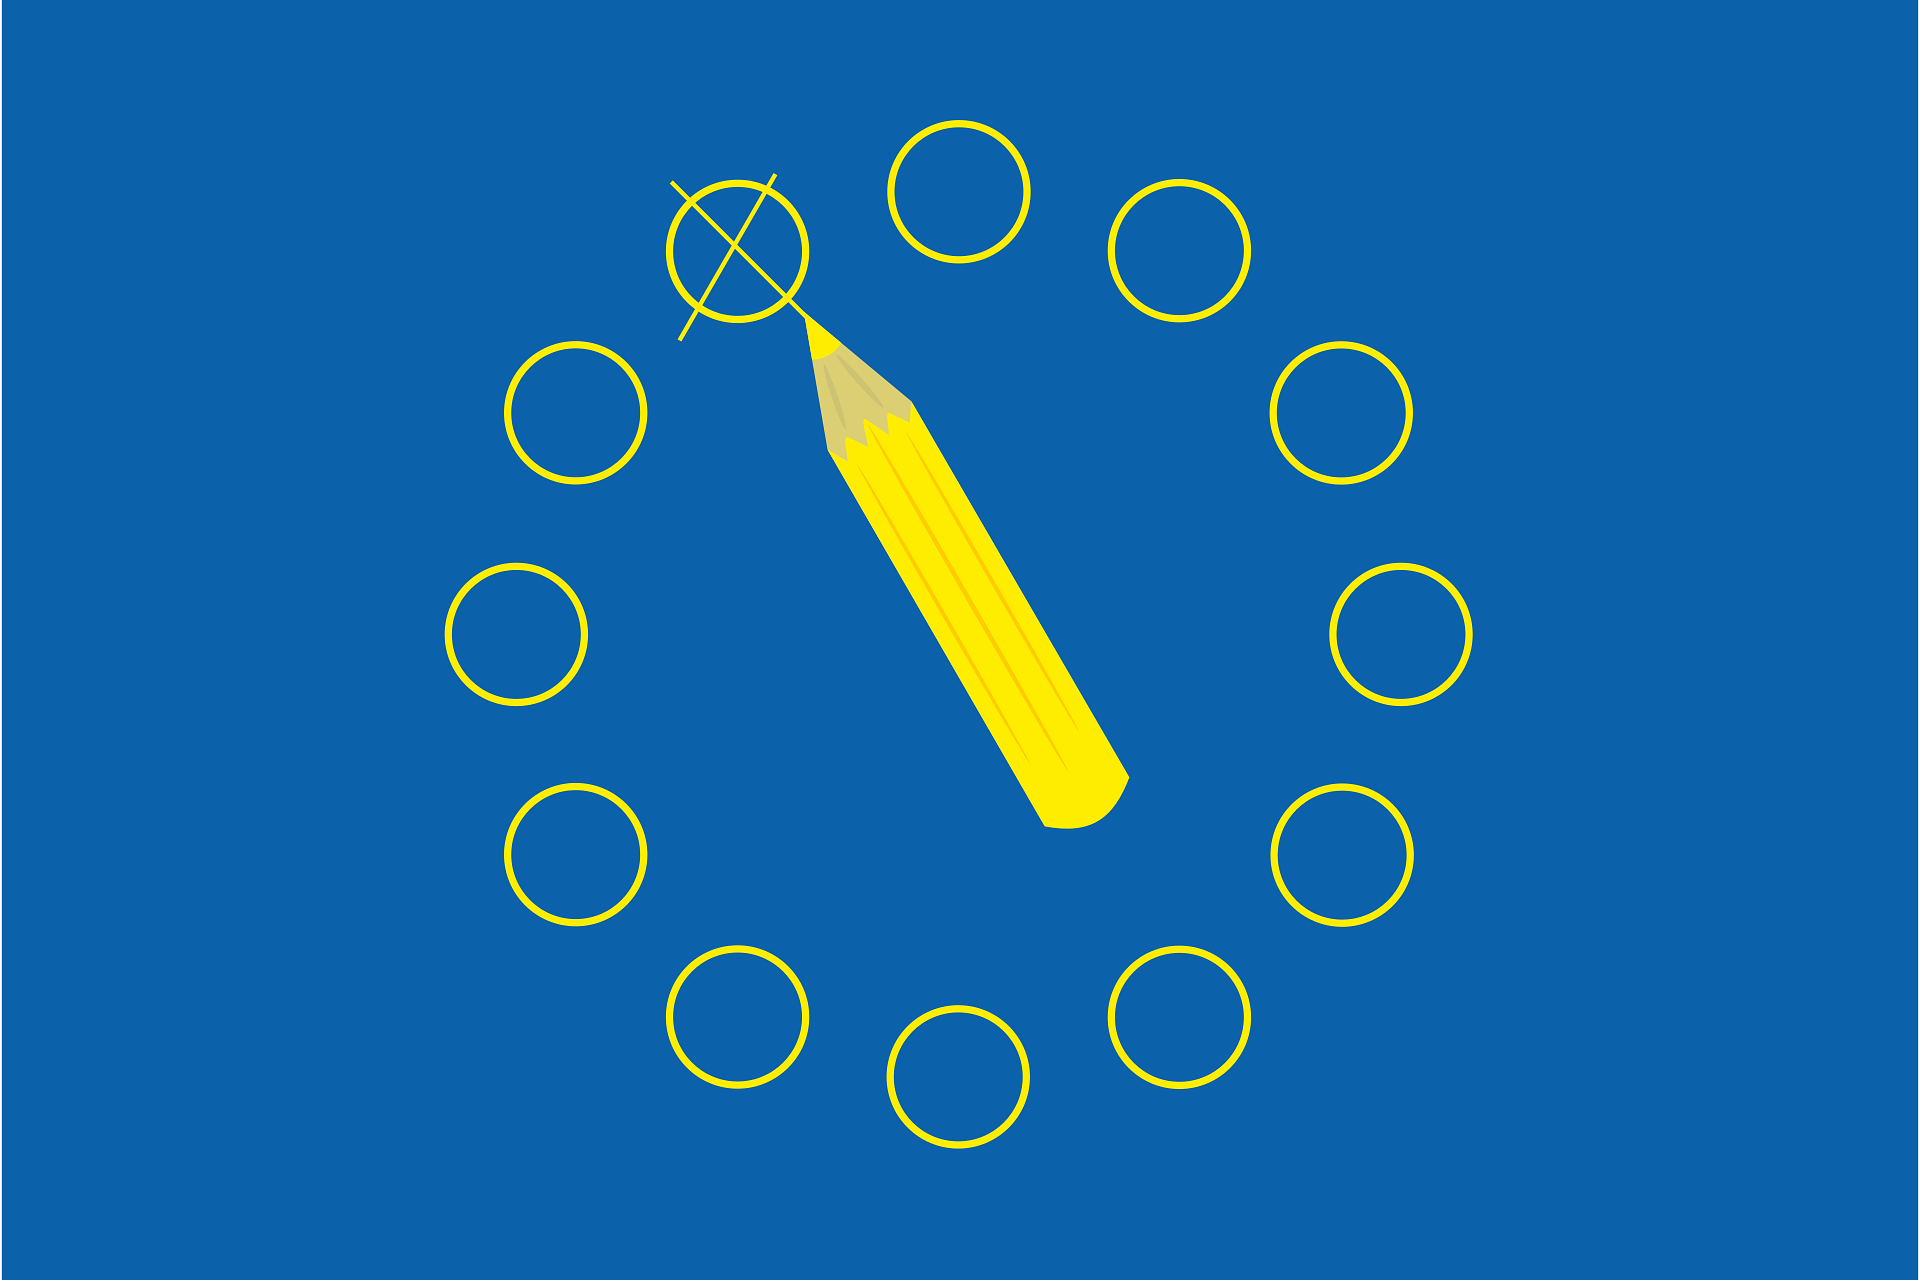 Blauer Hintergrund mit den gelben Sternen der Europafahne, die allerdings als Punkte dargestellt sind. In der Mitte ist ein gelber Stift zu sehen, der einen Punkt angekreuzt hat.